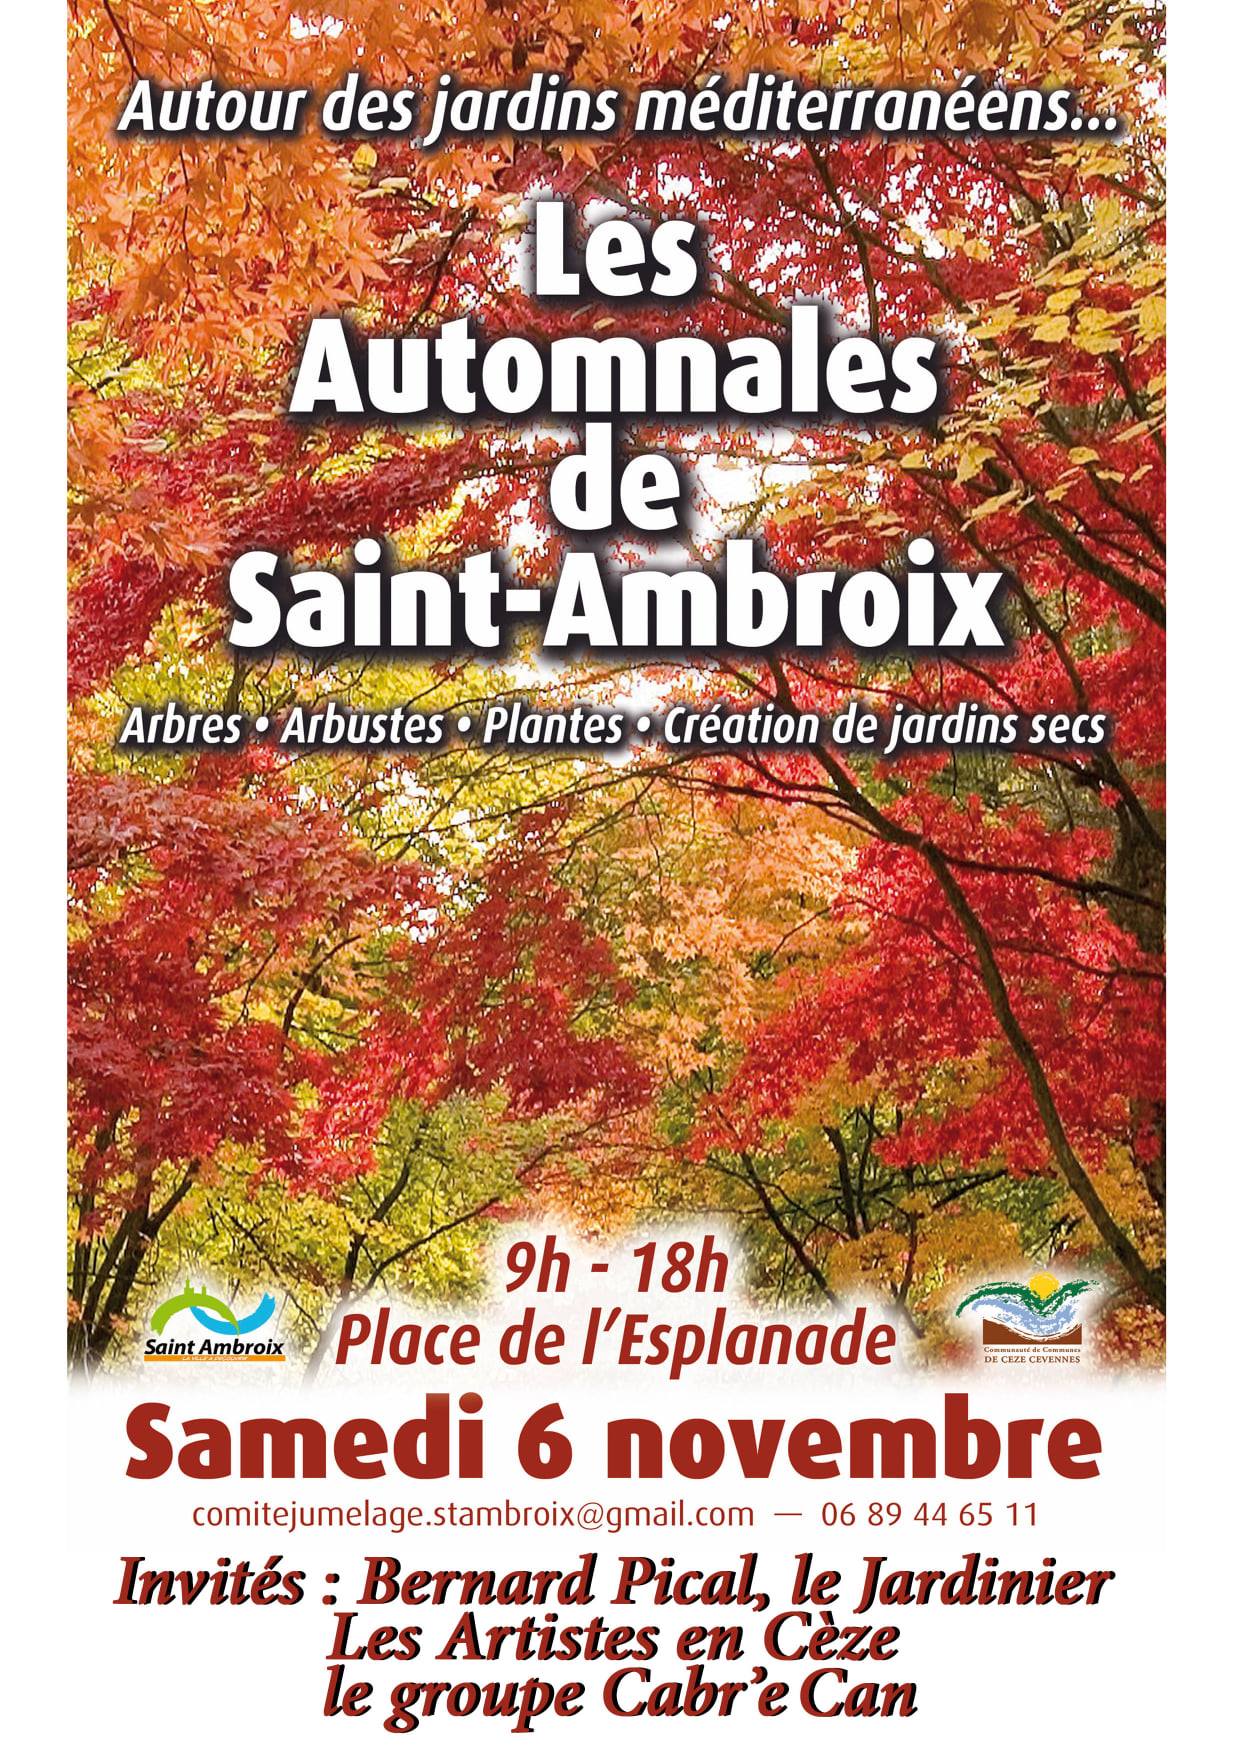 Les automnales de Saint-Ambroix